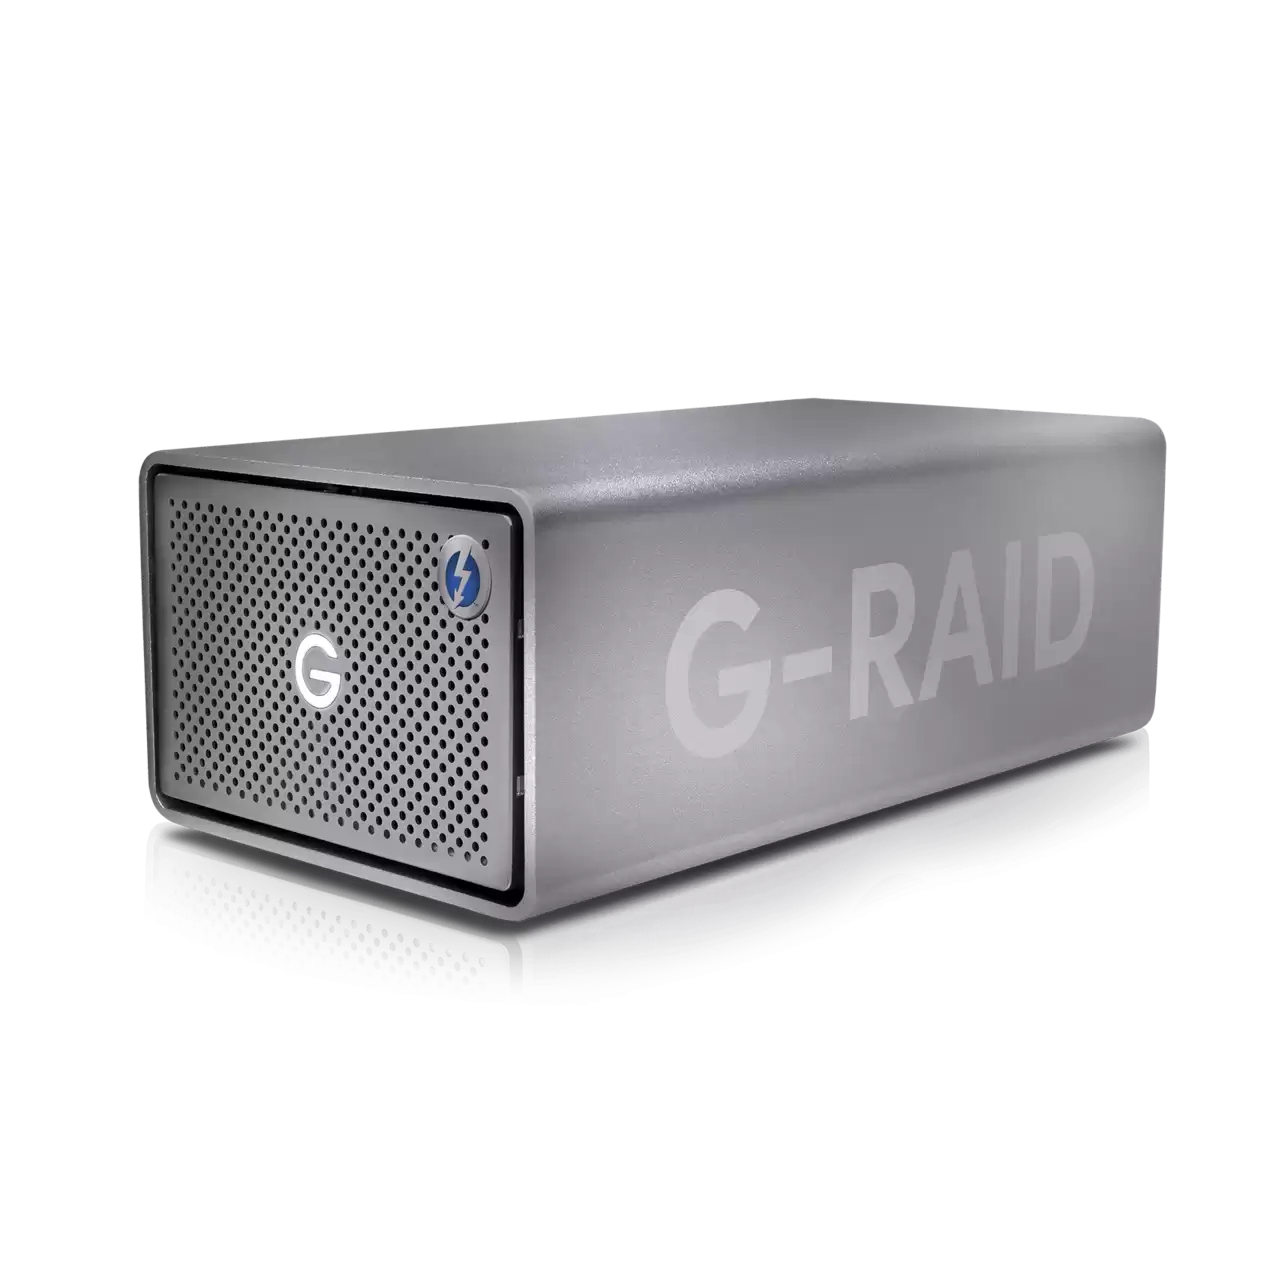 G-RAID SHUTTLE 4 72TB 